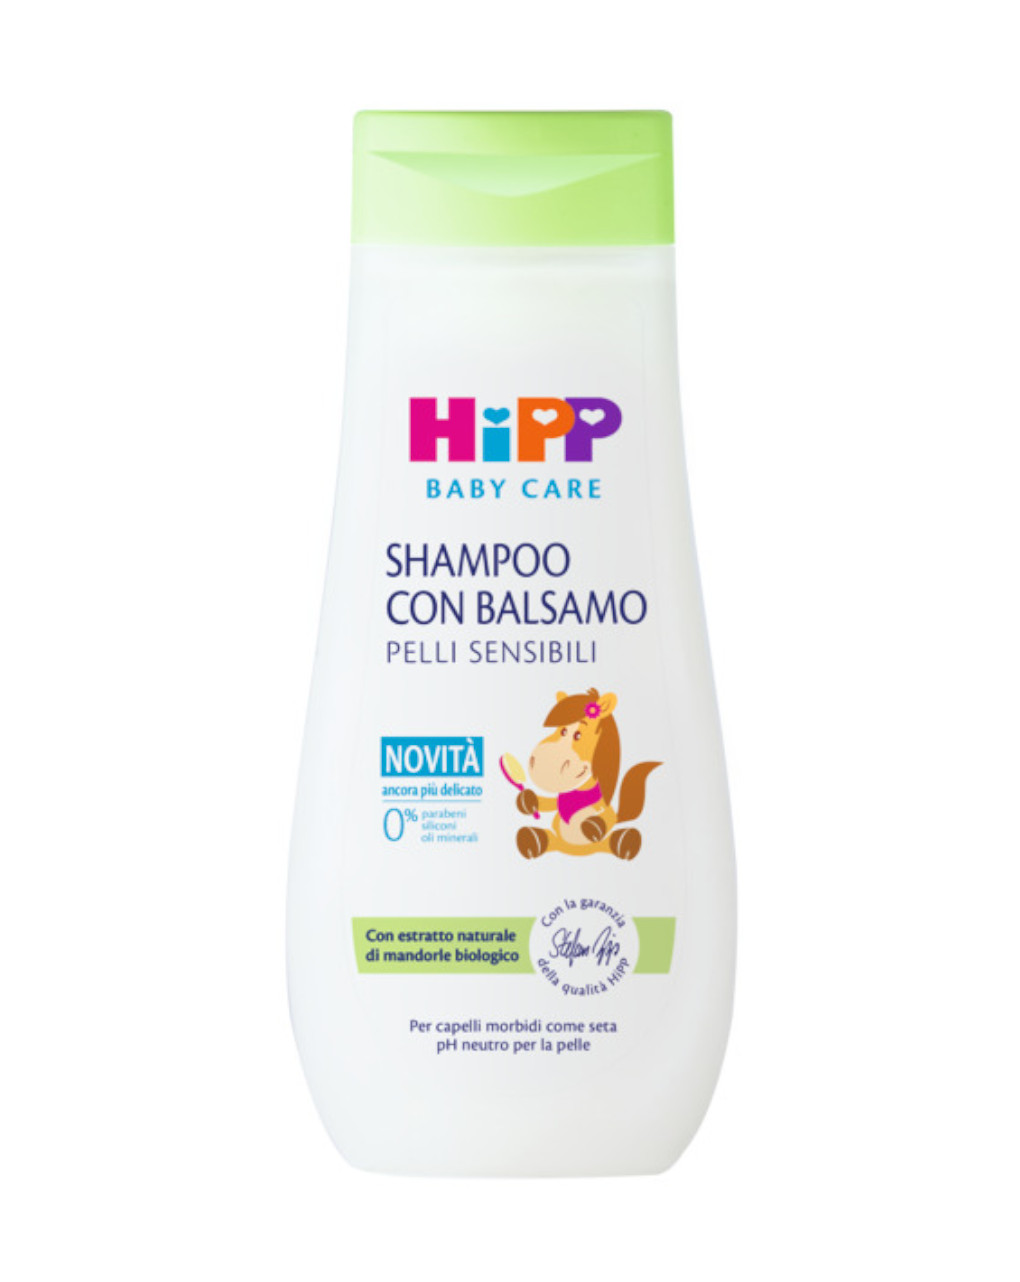 Shampoo con balsamo 200ml - hipp